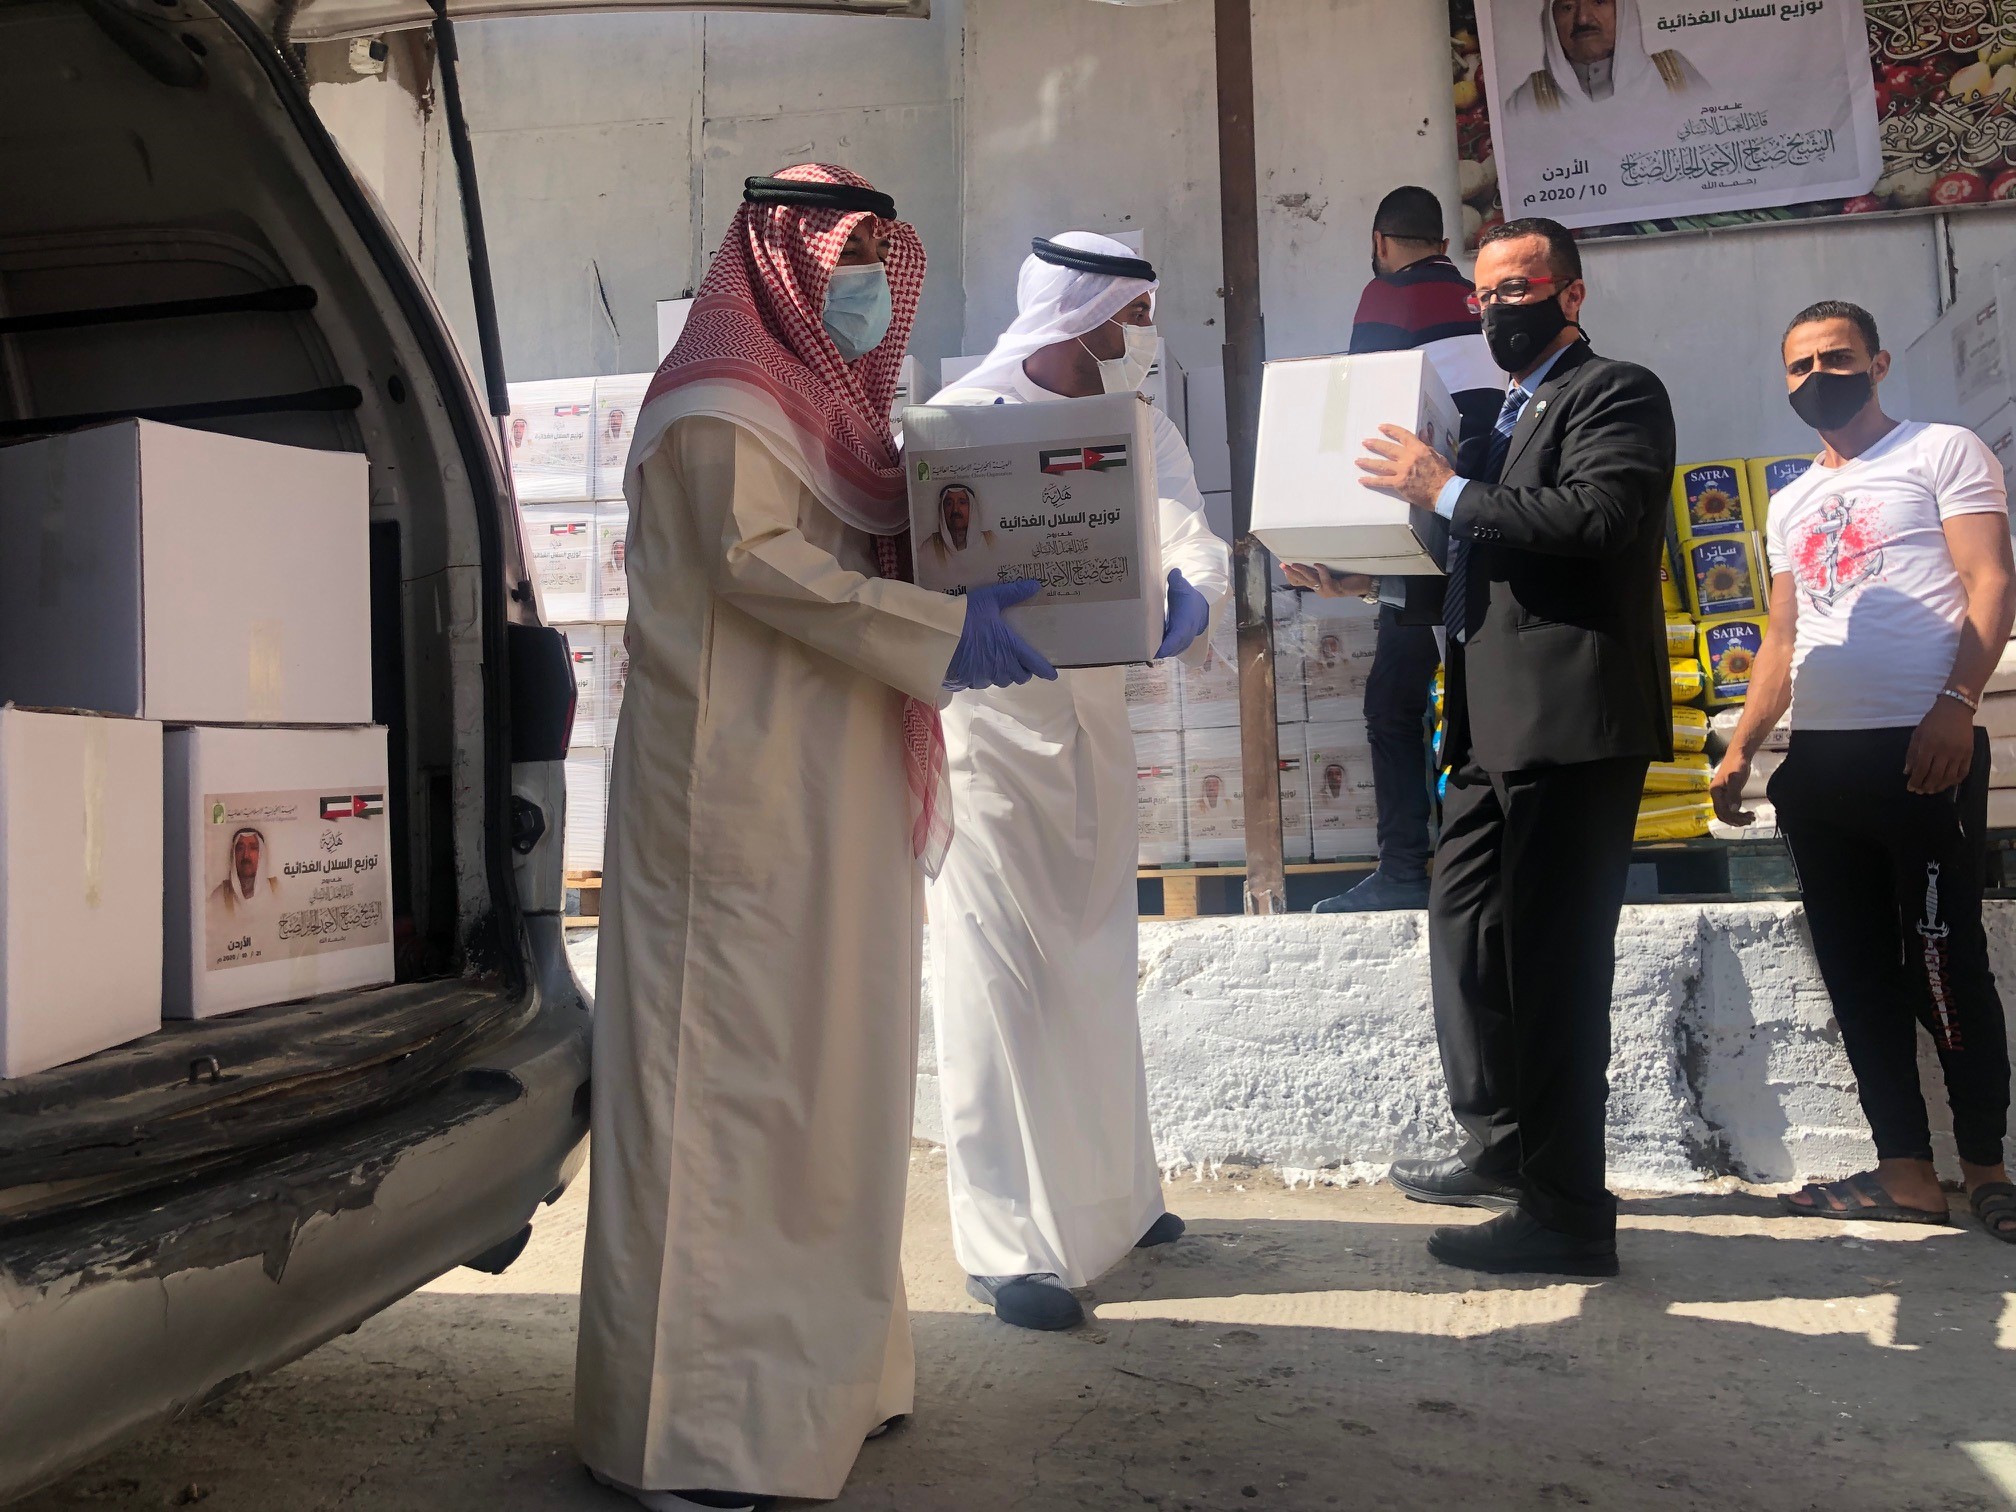 المؤسسات الكويتية تواصل مسيرة العمل الإنساني وتصل إلى المحتاجين في الكويت والعالم